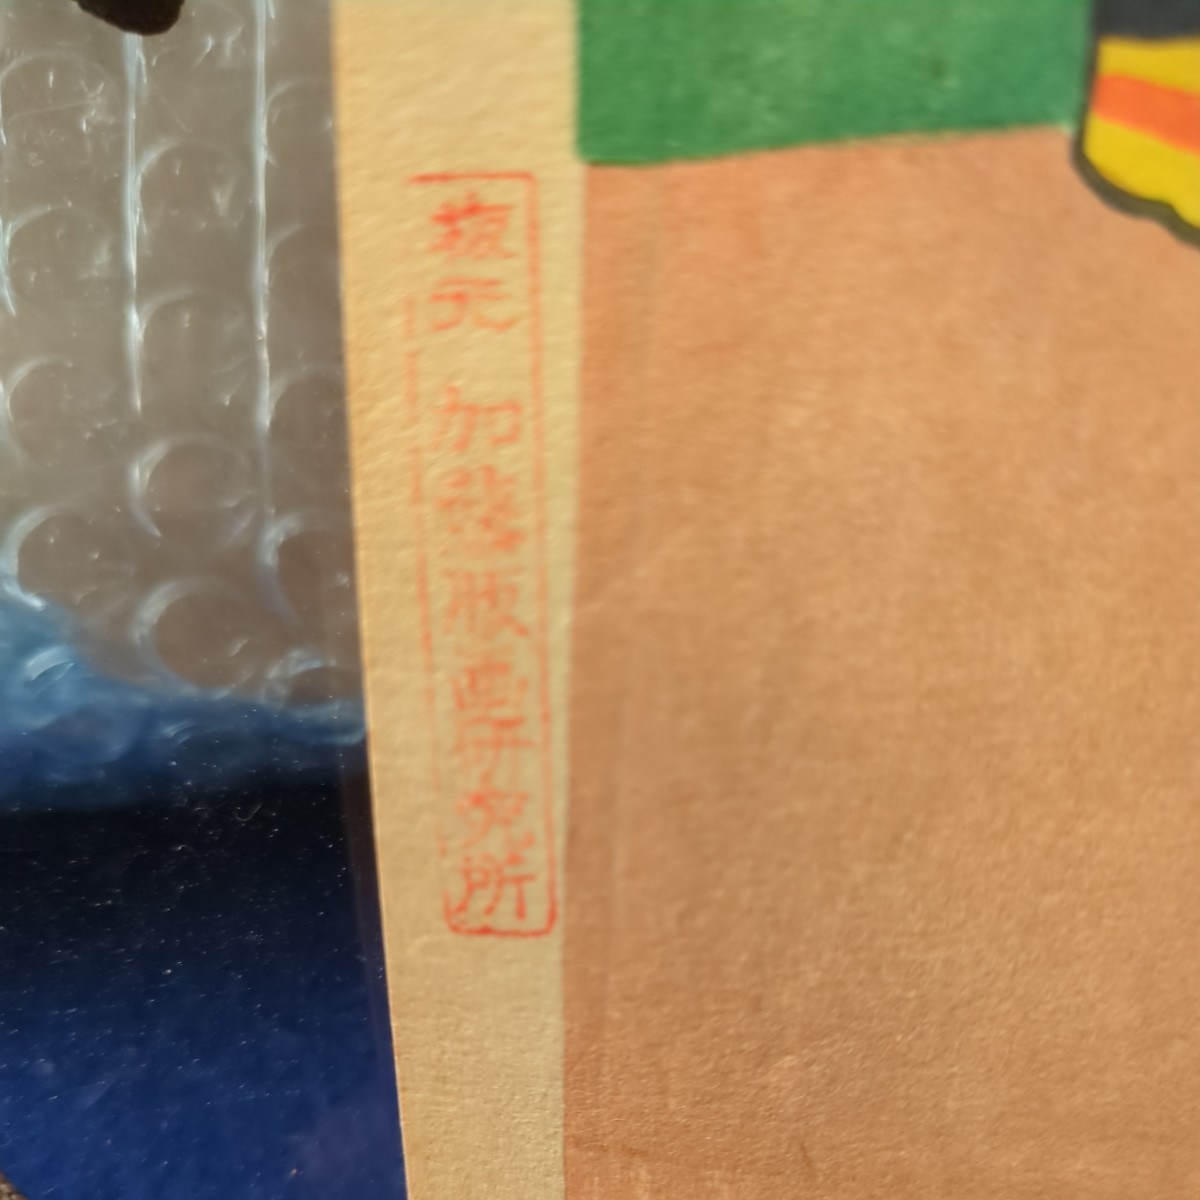 鈴木信太郎（すずき しんたろう）1895－1989　洋画家 「人形(a)」 版画　サイン入 額装 当時物 絵サイズ 25×27.5cm 版元 加藤版画研究所_画像2